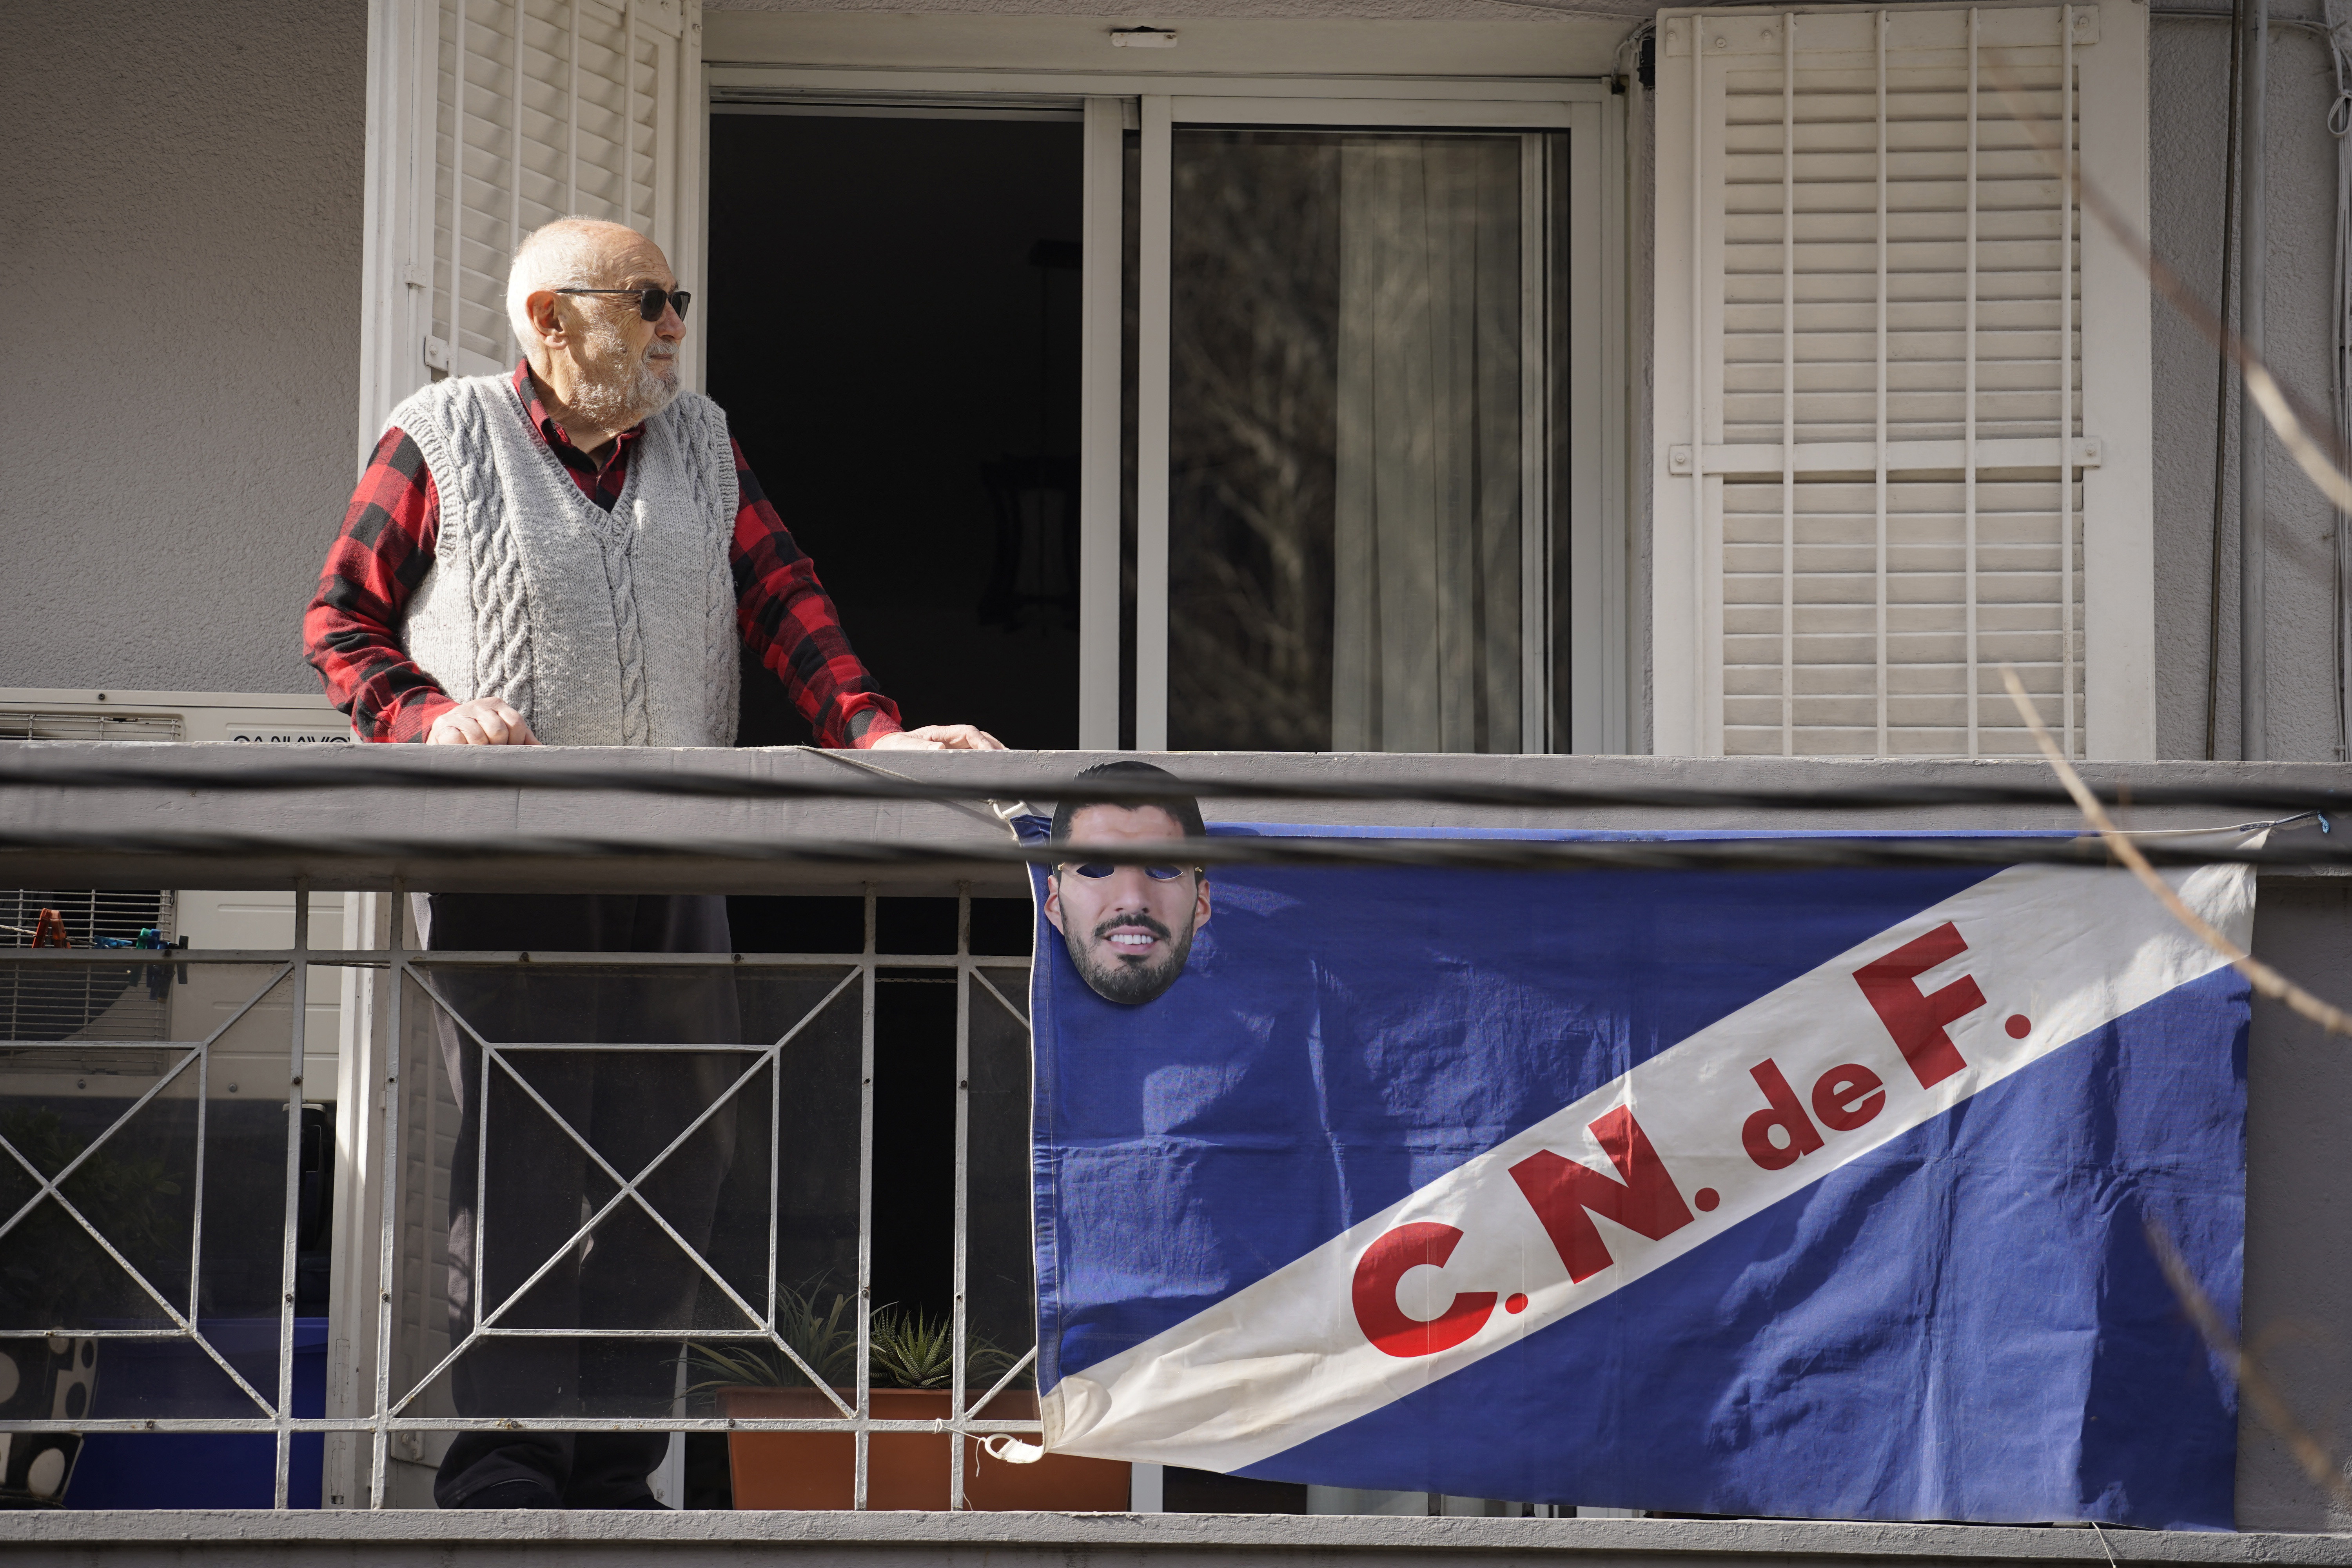 Même les balcons étaient habillés pour le passage de la caravane transportant Suárez et sa famille (REUTERS / Andres Cuenca Olaondo)